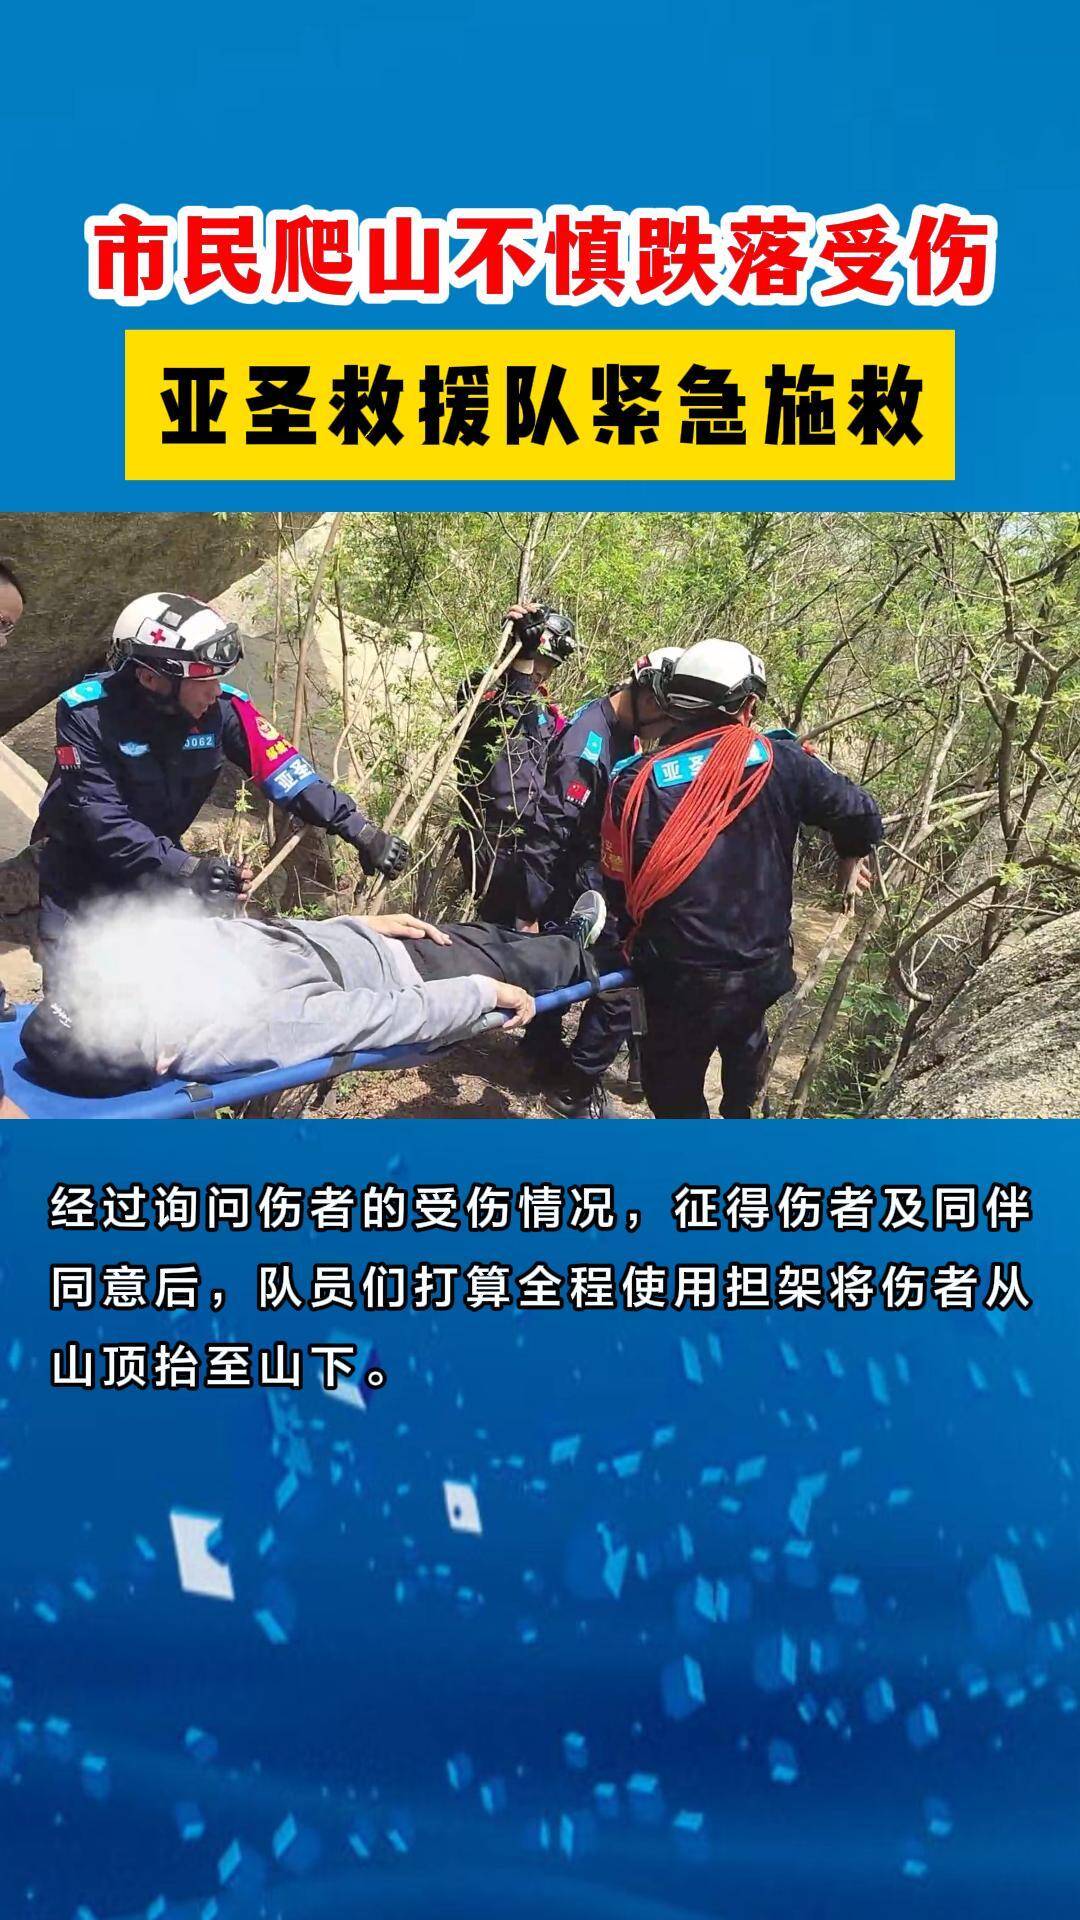 【邹视频·新闻】70秒|市民爬山不慎跌落受伤  亚圣救援队紧急施救